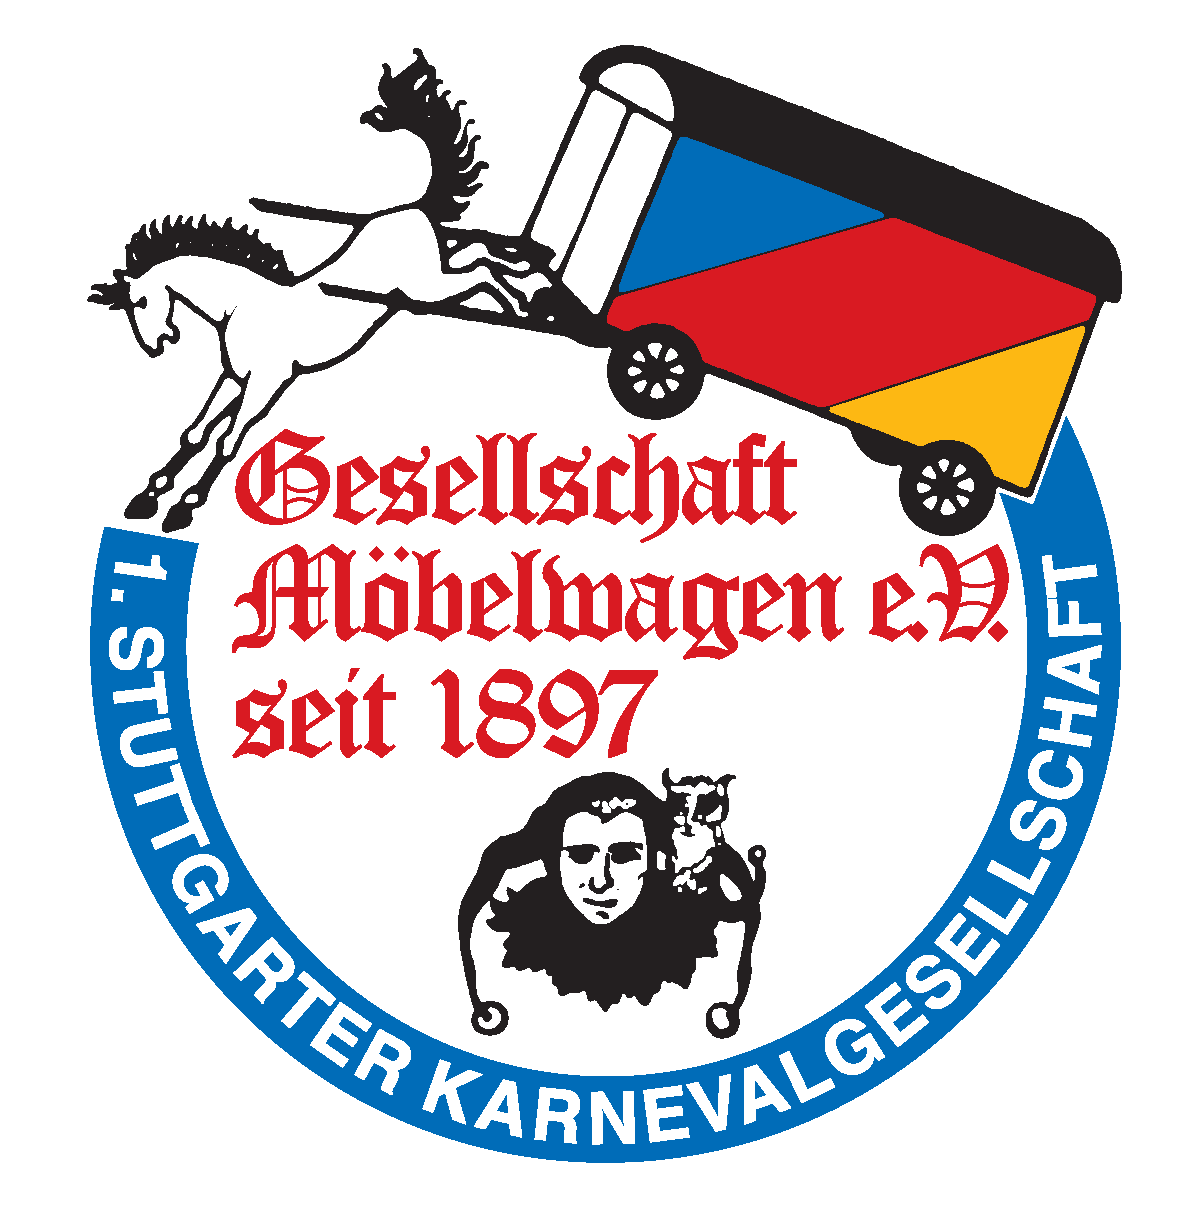 Gesellschaft Möbelwagen 1897 e.V. 1. Stuttgarter Karnevalsverein